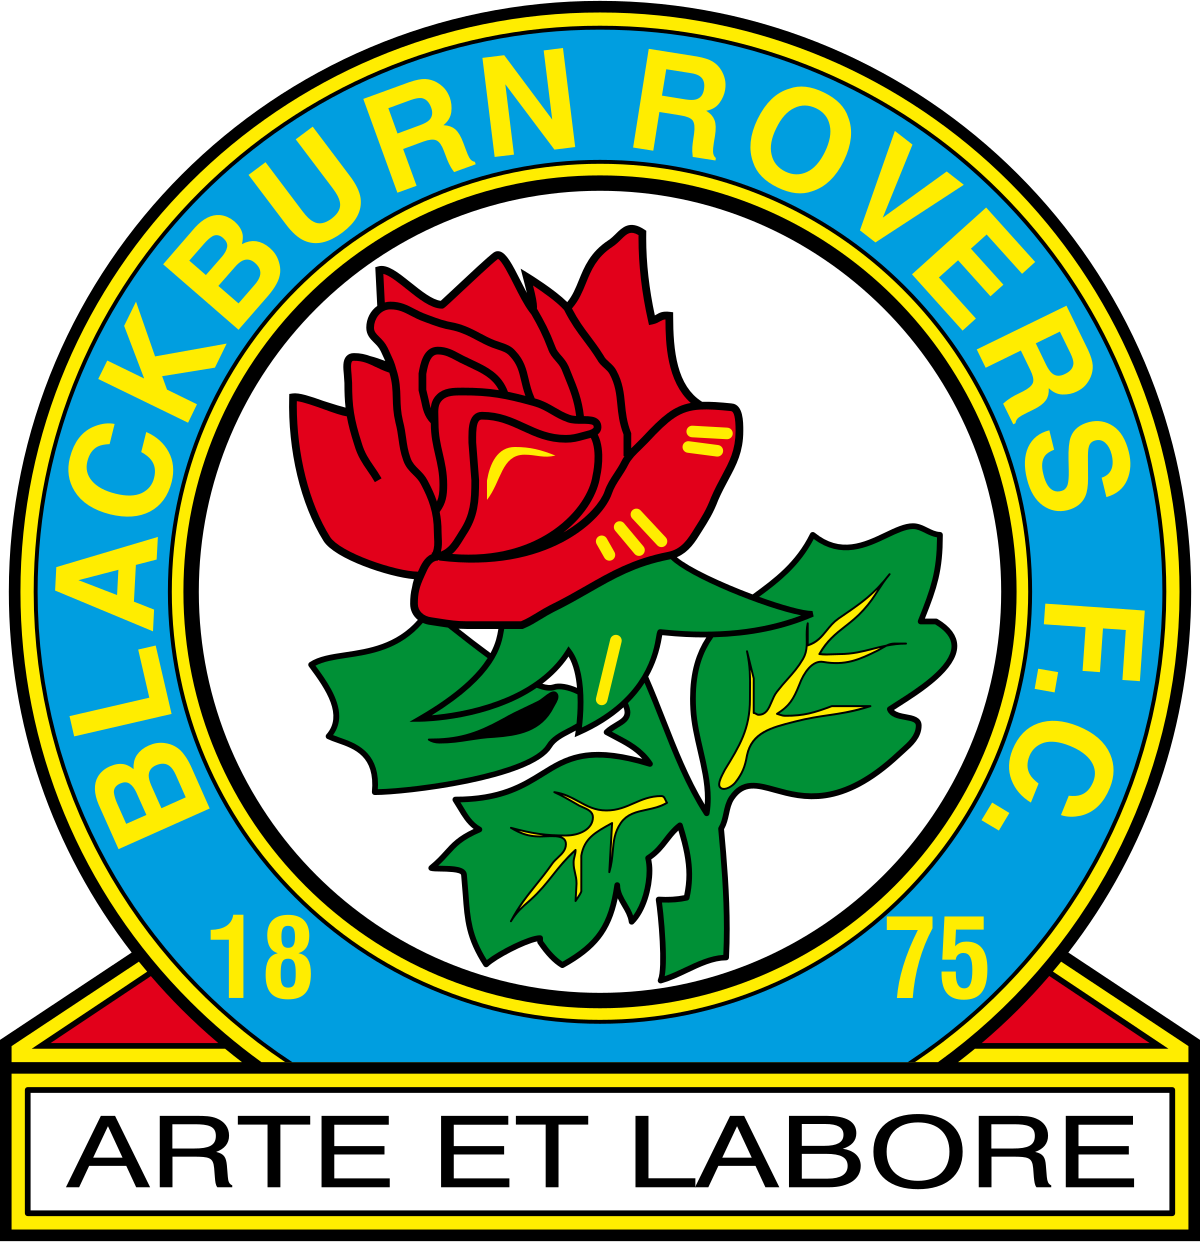 Blackburn U-18 logo